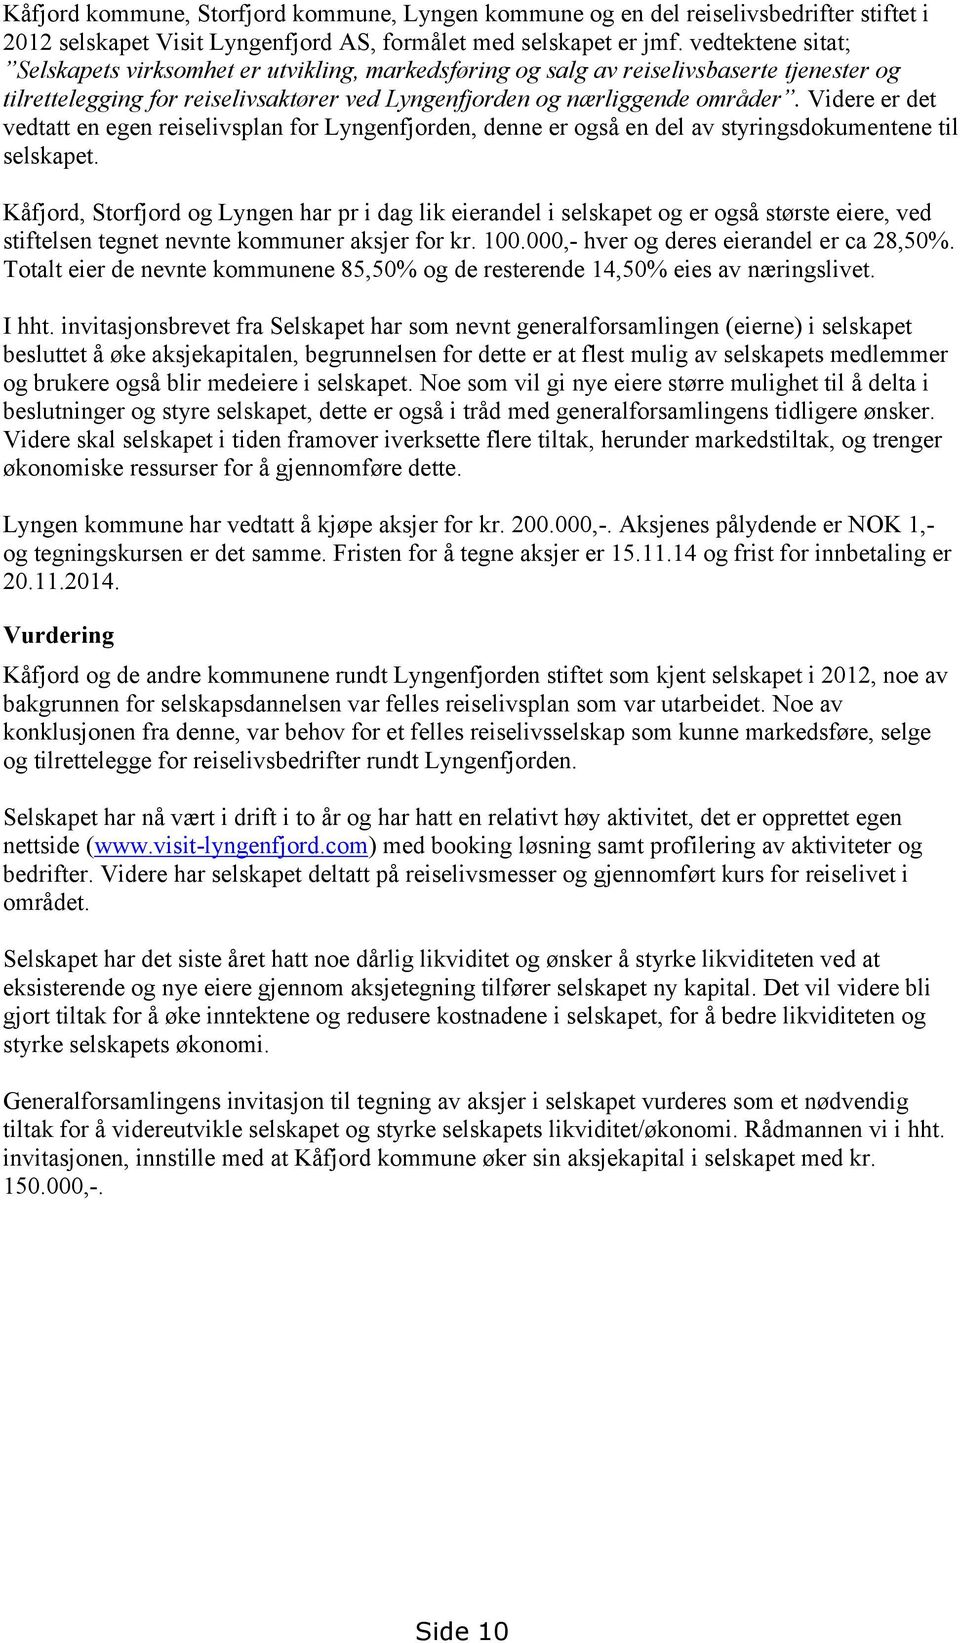 Videre er det vedtatt en egen reiselivsplan for Lyngenfjorden, denne er også en del av styringsdokumentene til selskapet.